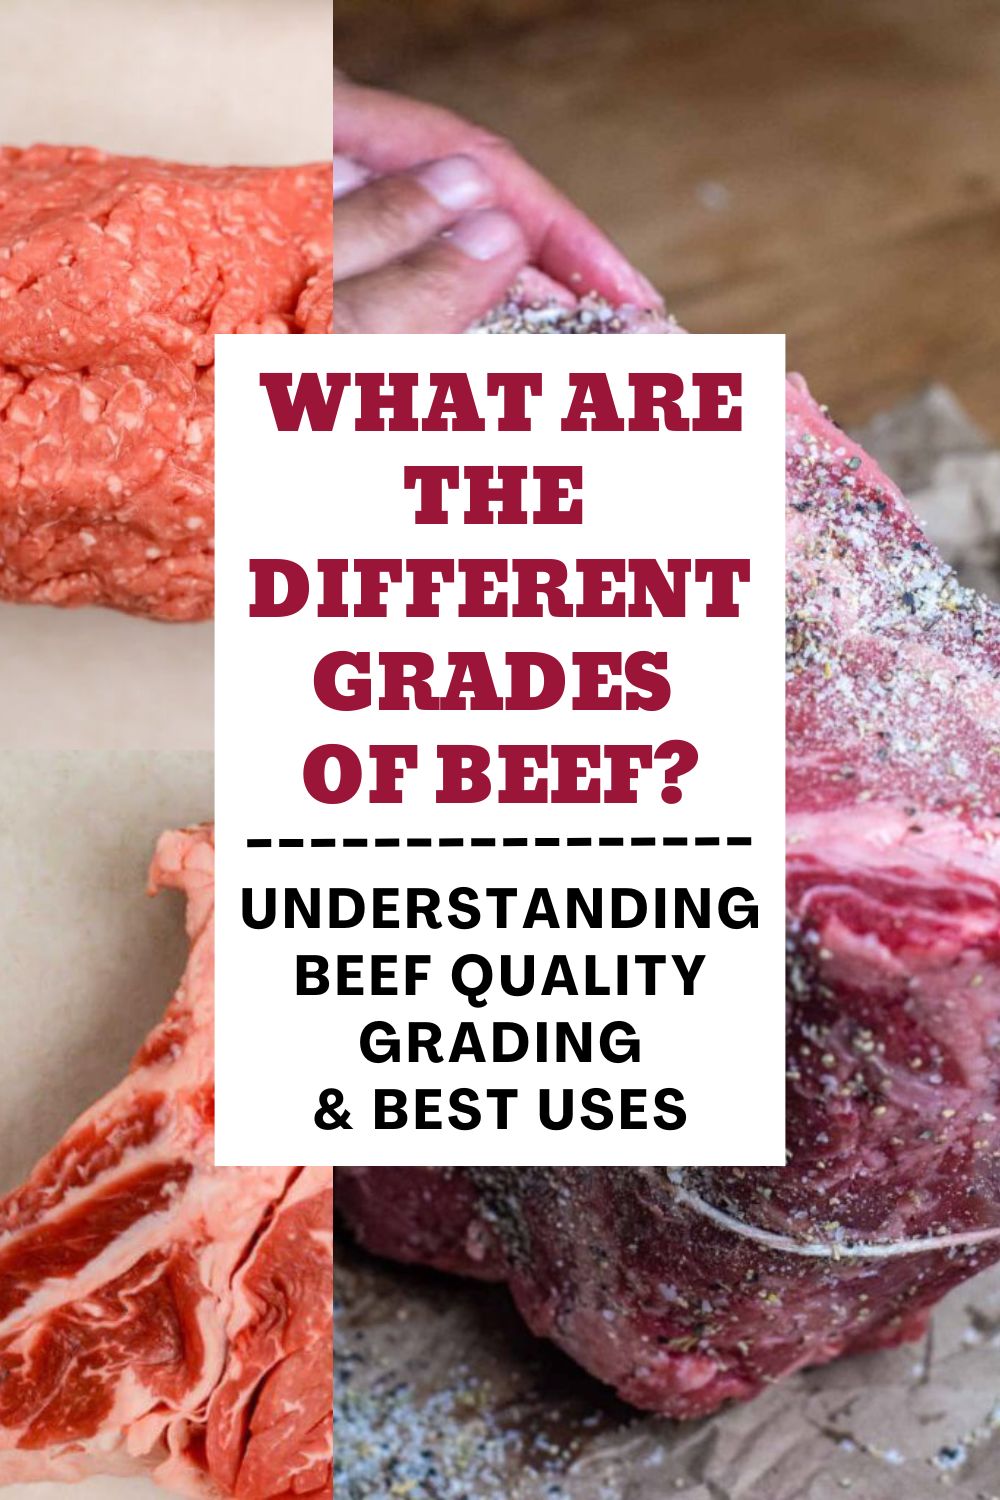 Grades of Beef